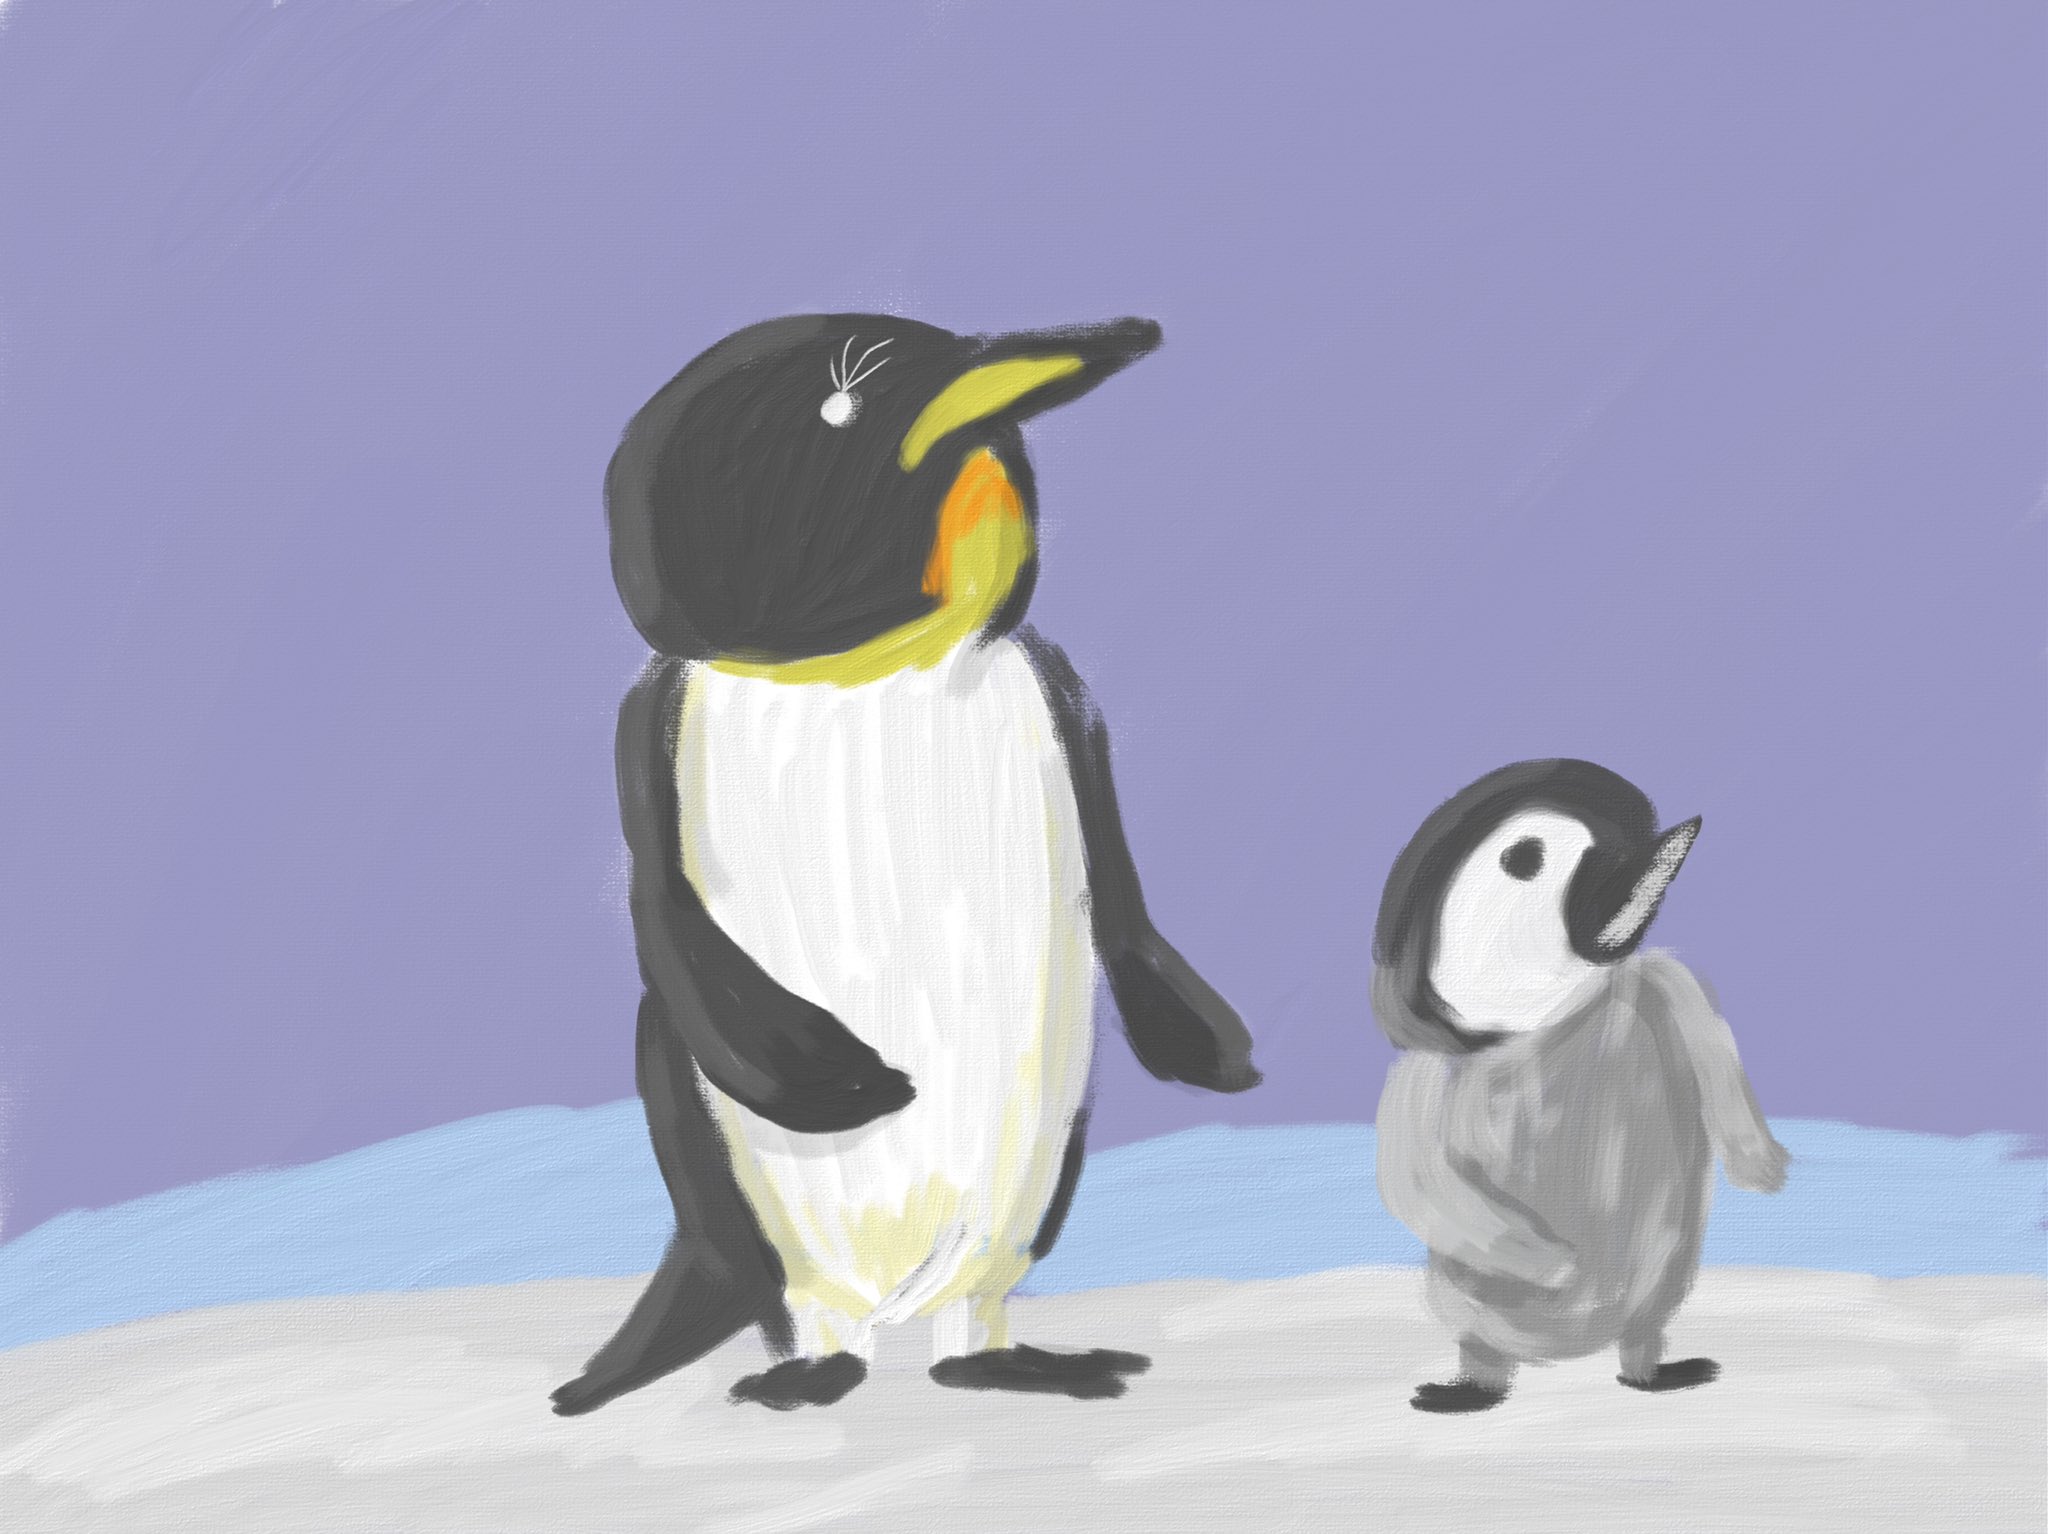 Aki かわいい子供 動物イラスト描きます 皇帝ペンギンと赤ちゃんペンギン アート 絵 Artlife Illust Illustrator Illustration イラスト イラストレーター 動物 ペンギン 赤ちゃん 親子 動物イラスト 芸術同盟 絵描きさんと繫がりたい